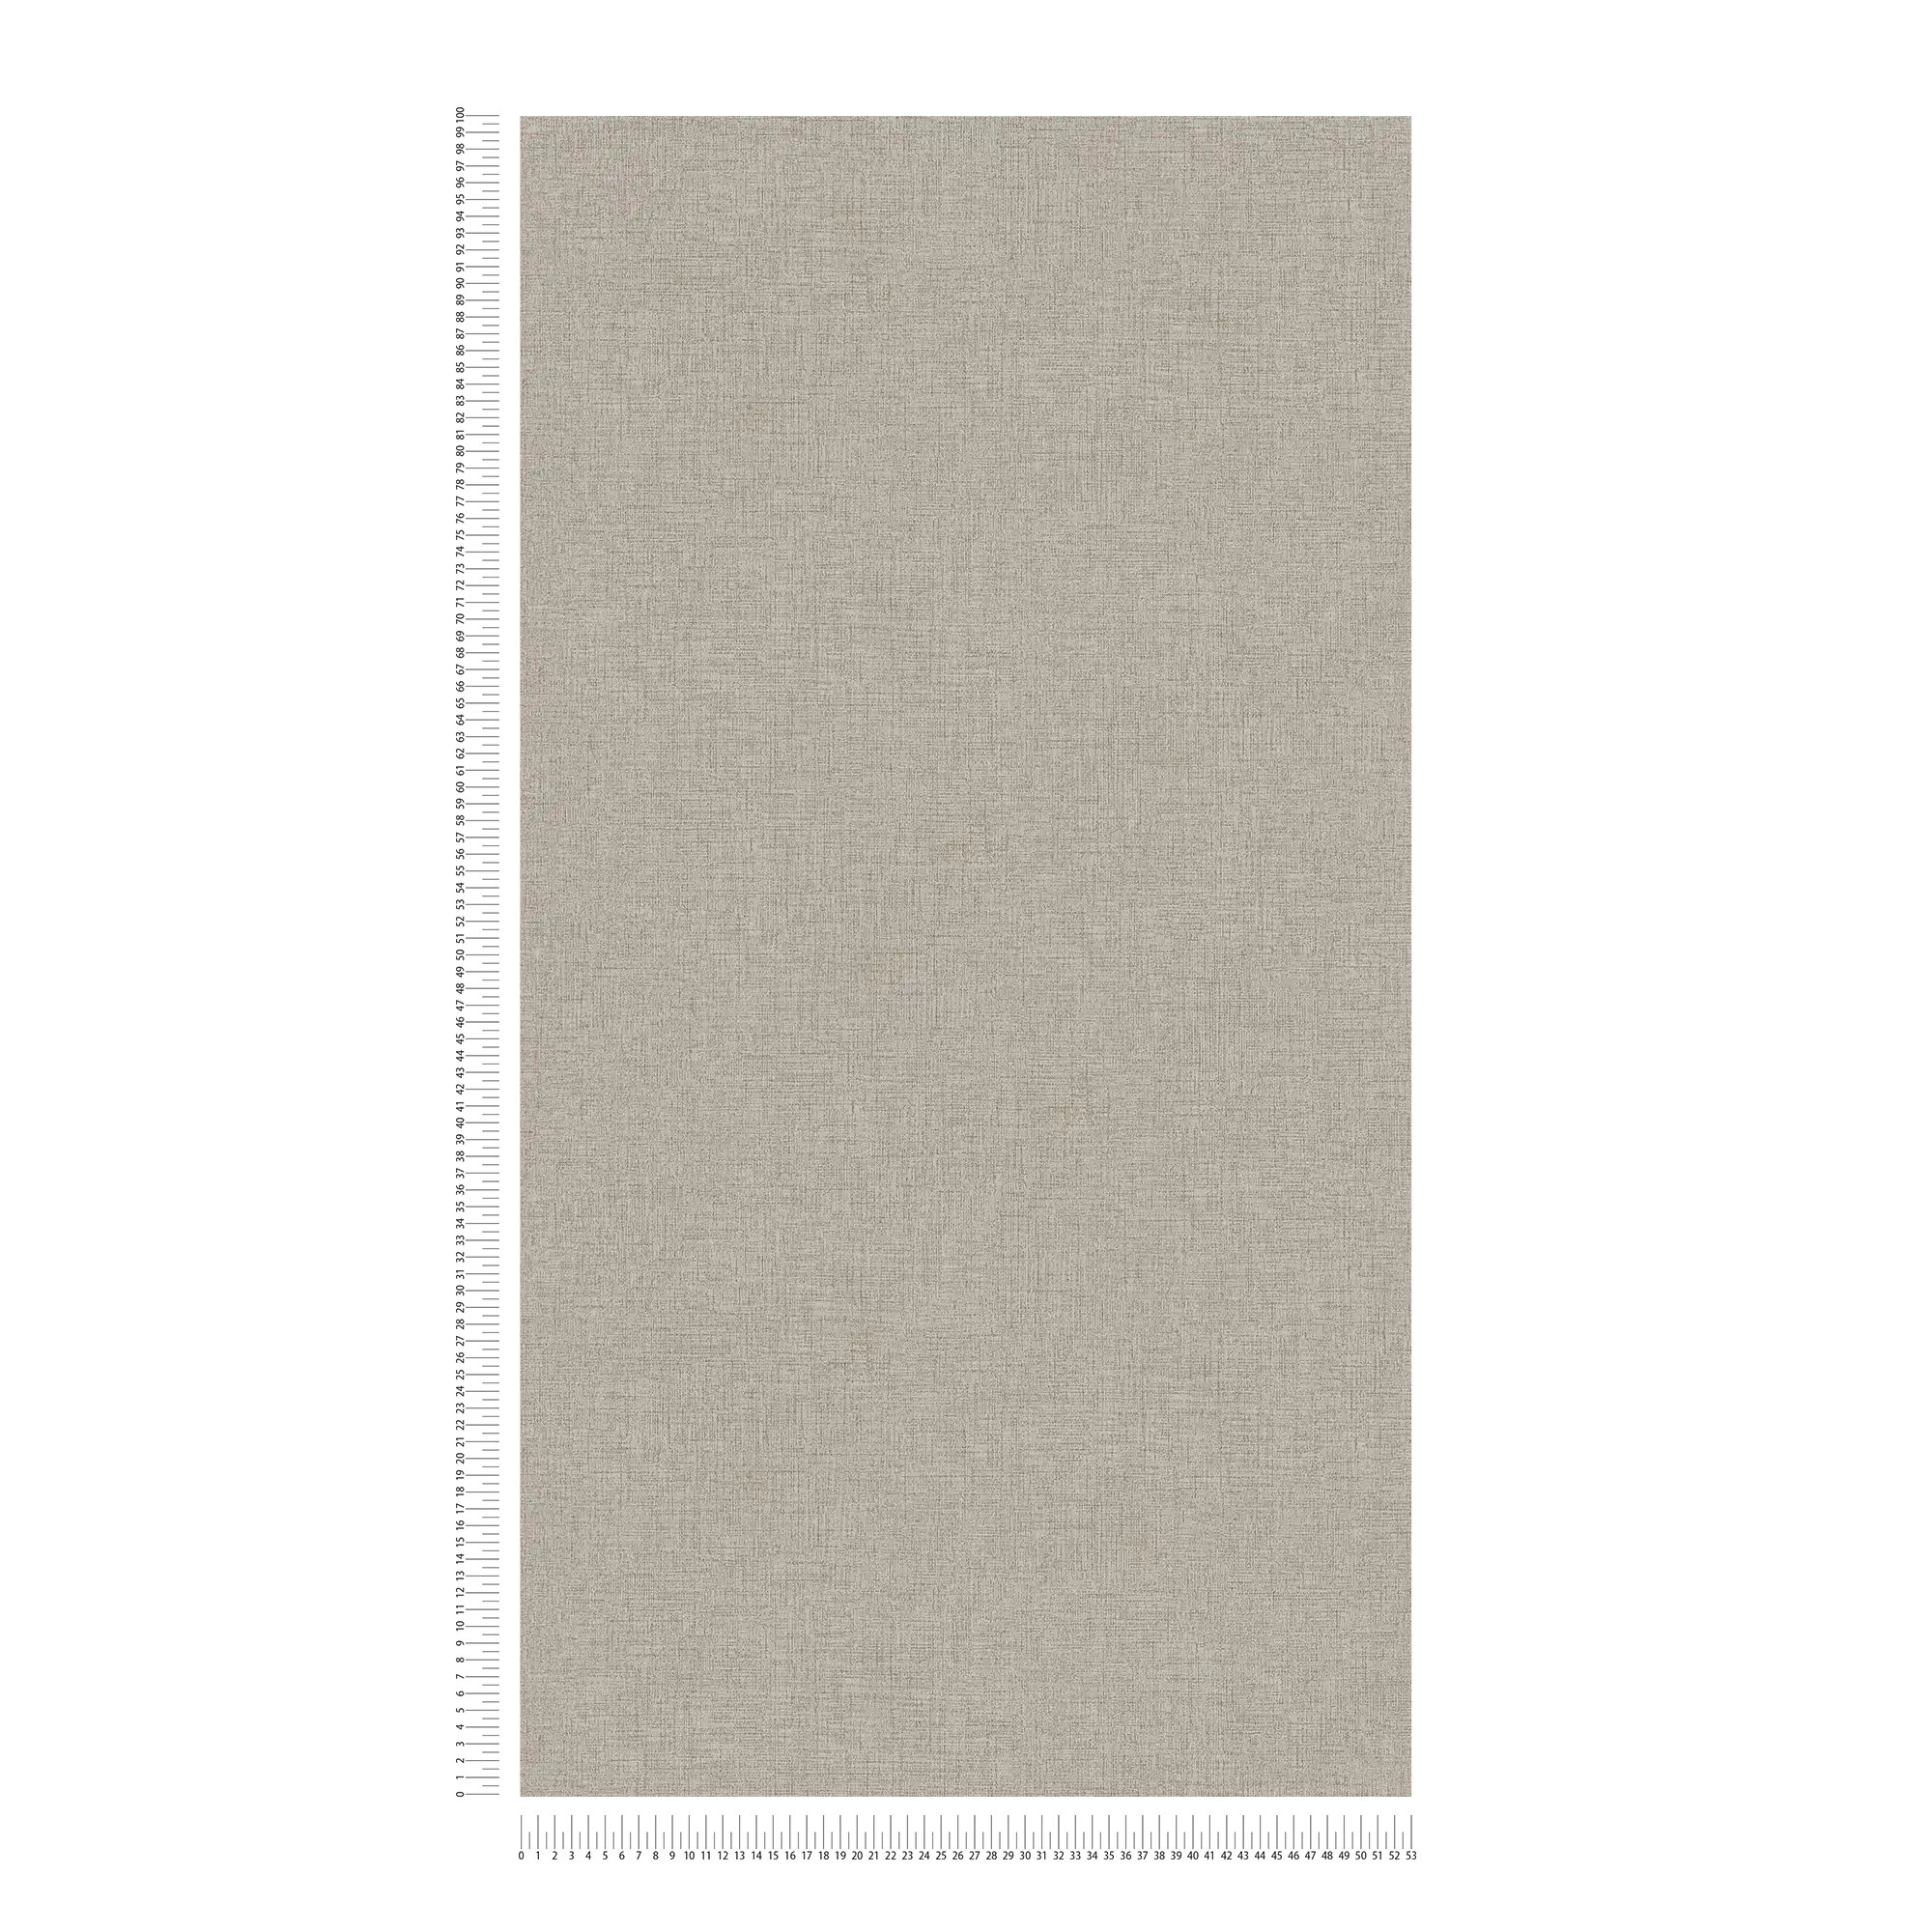             Linen look wallpaper plain, neutral - beige
        